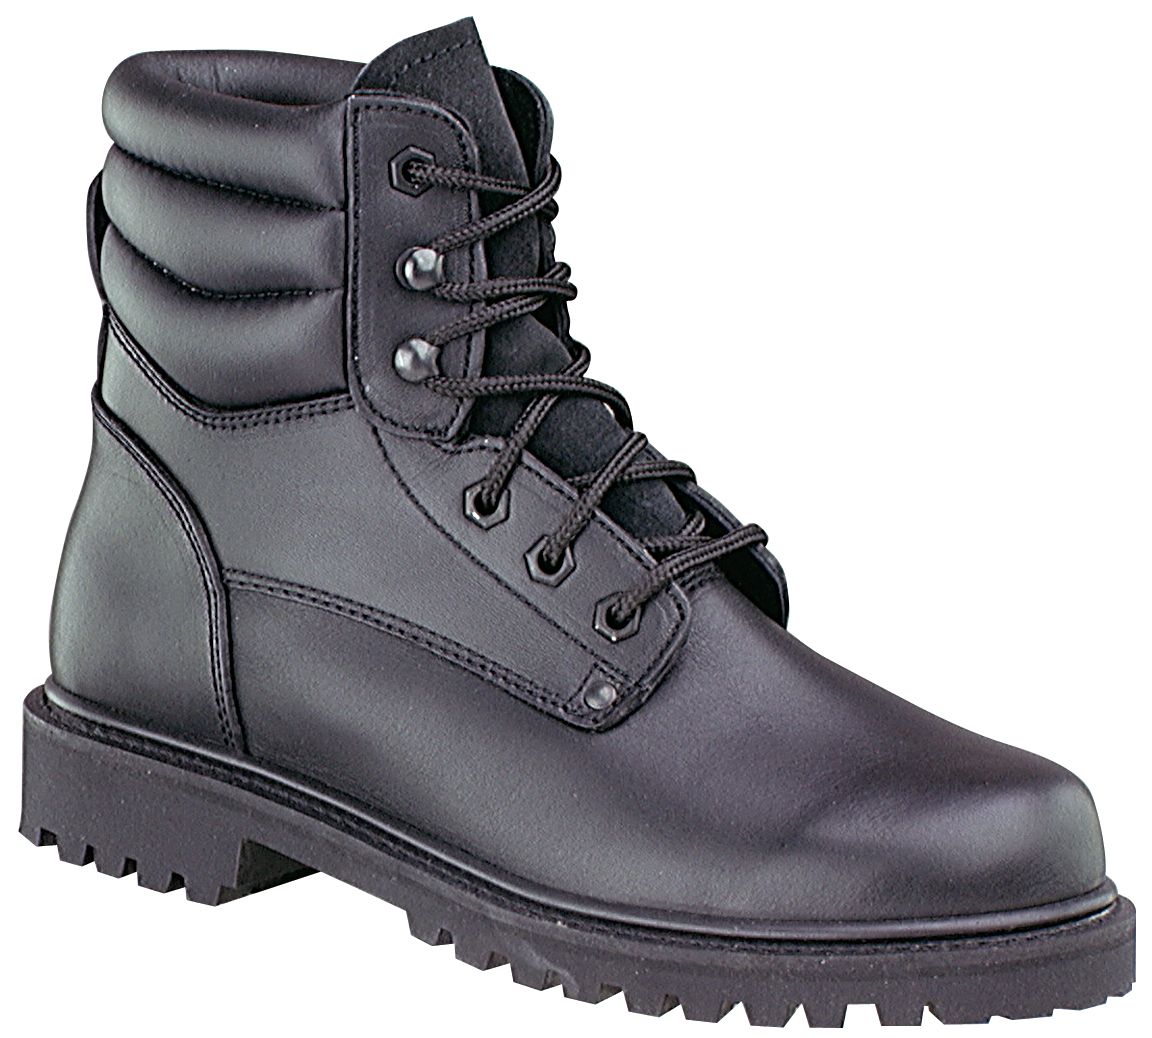 Black Work Boots For Men hFKbebn6